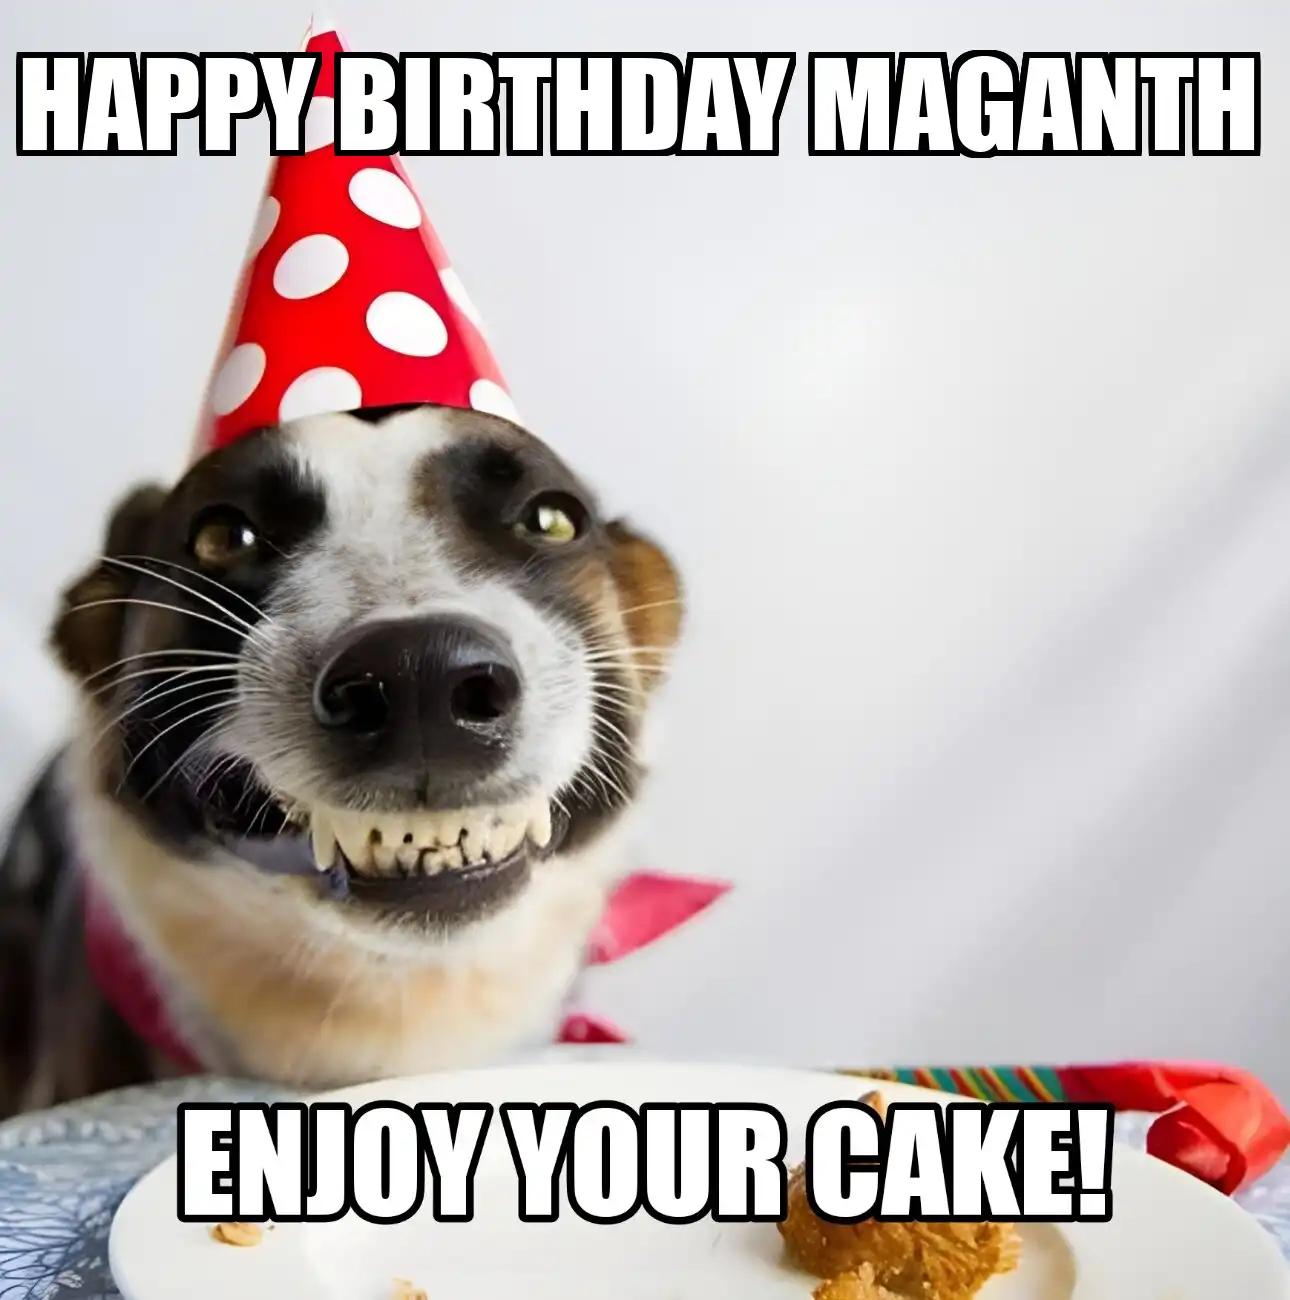 Happy Birthday Maganth Enjoy Your Cake Dog Meme